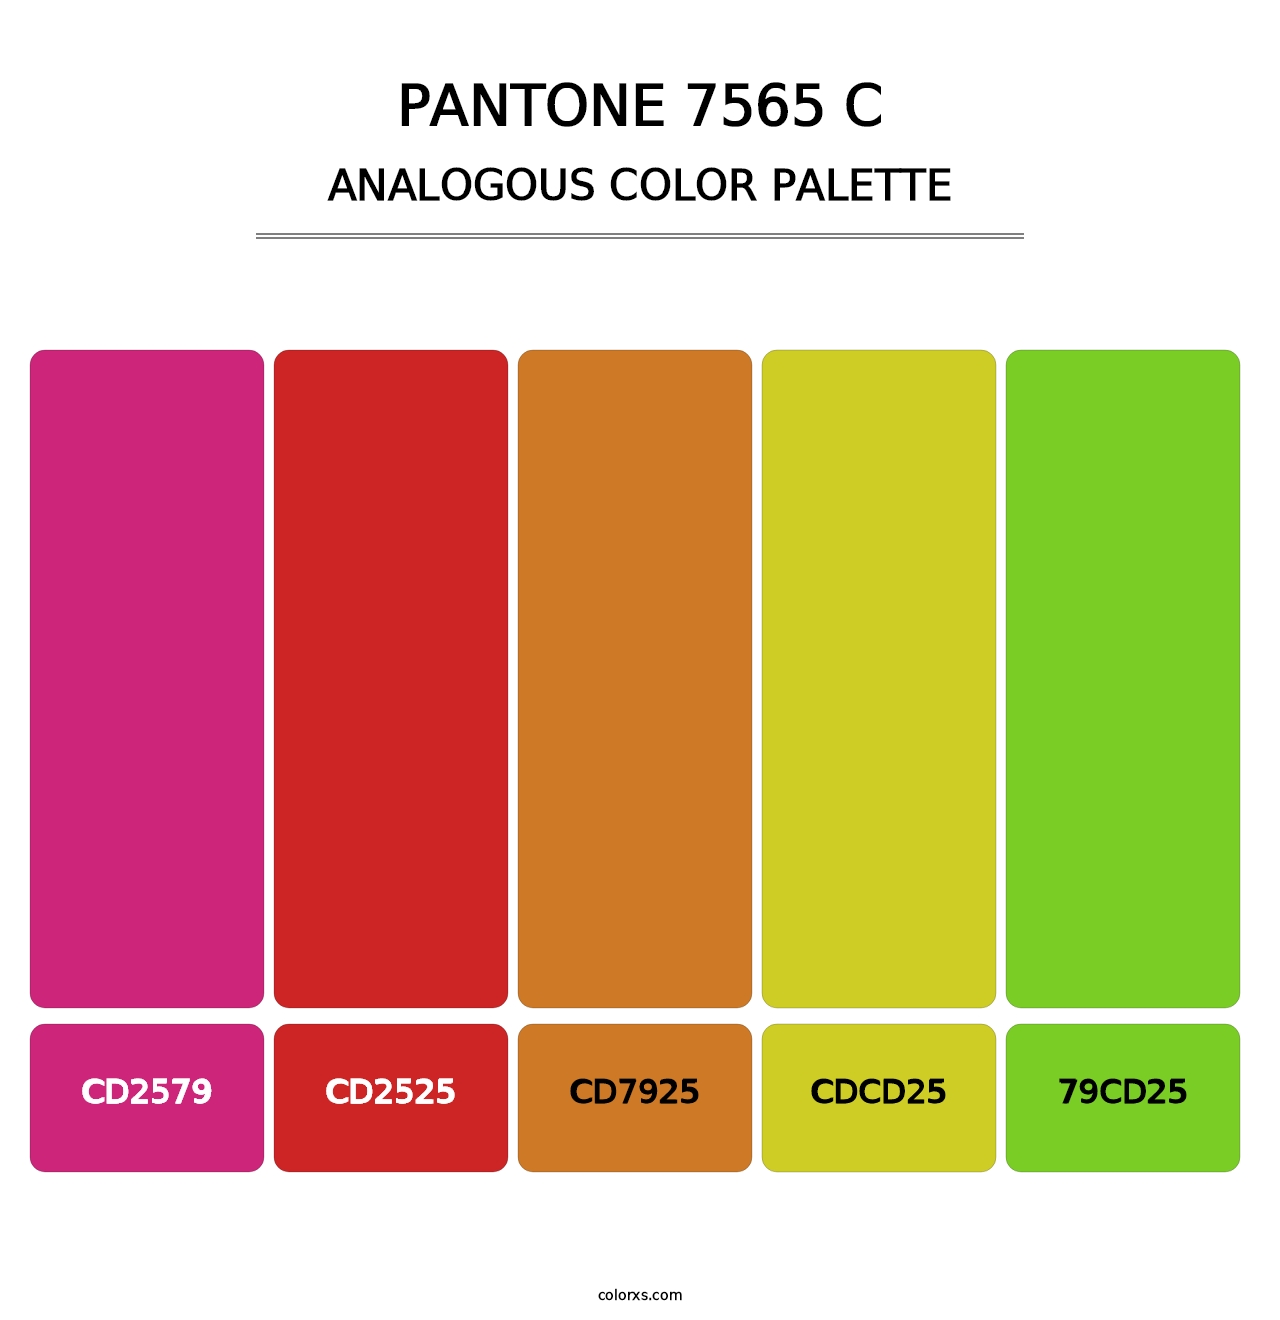 PANTONE 7565 C - Analogous Color Palette